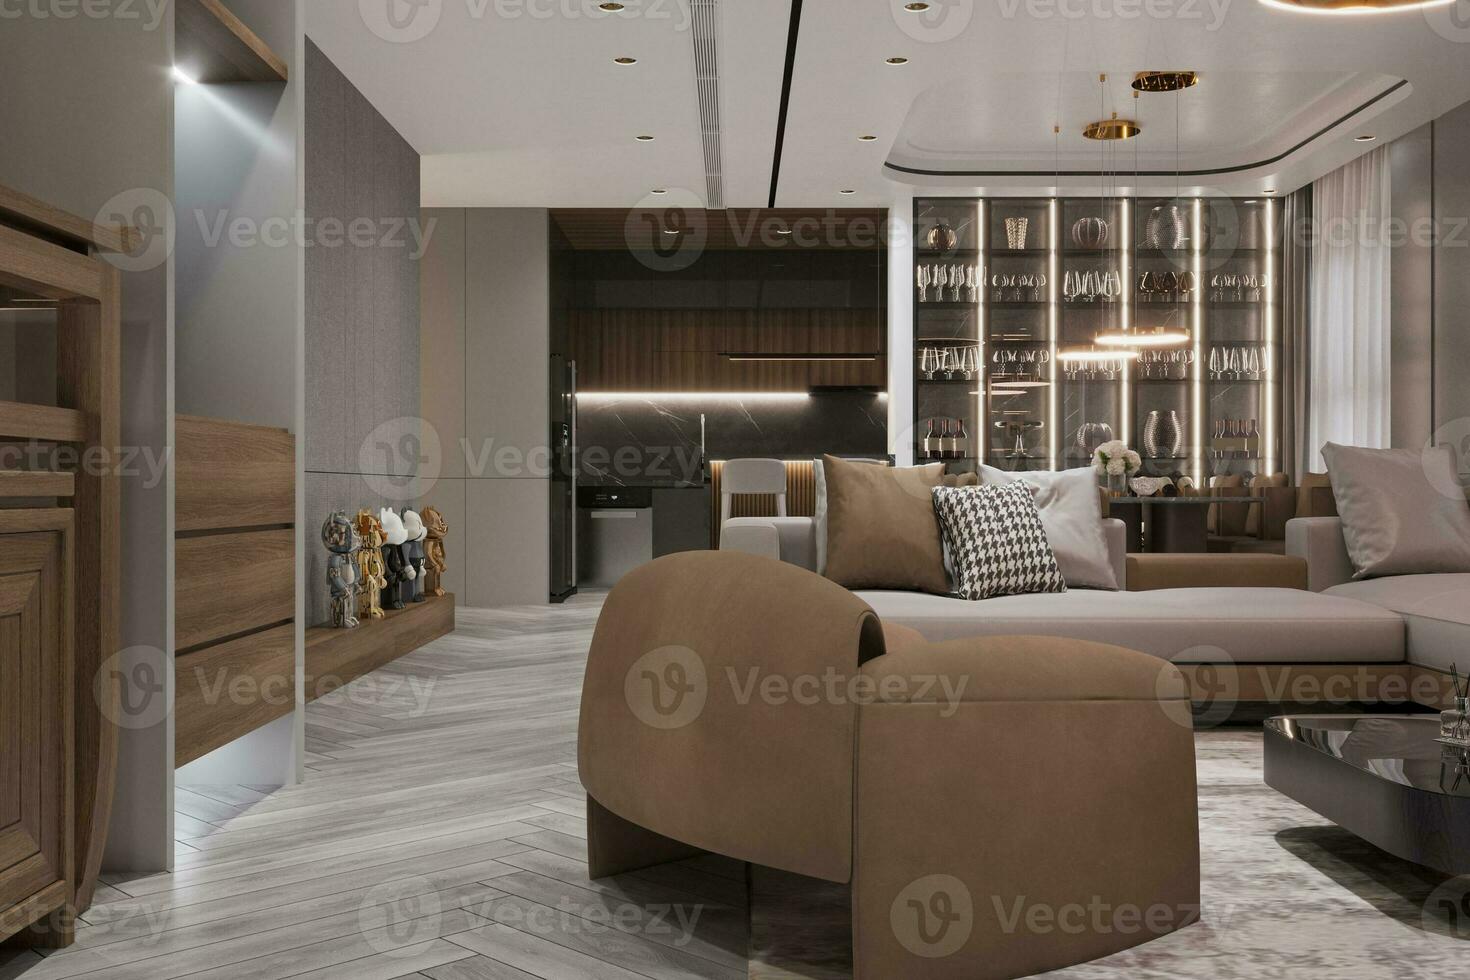 maravilloso vivo habitación interior diseño con completar mueble asignación inteligente hogar decoración elementos 3d representación foto